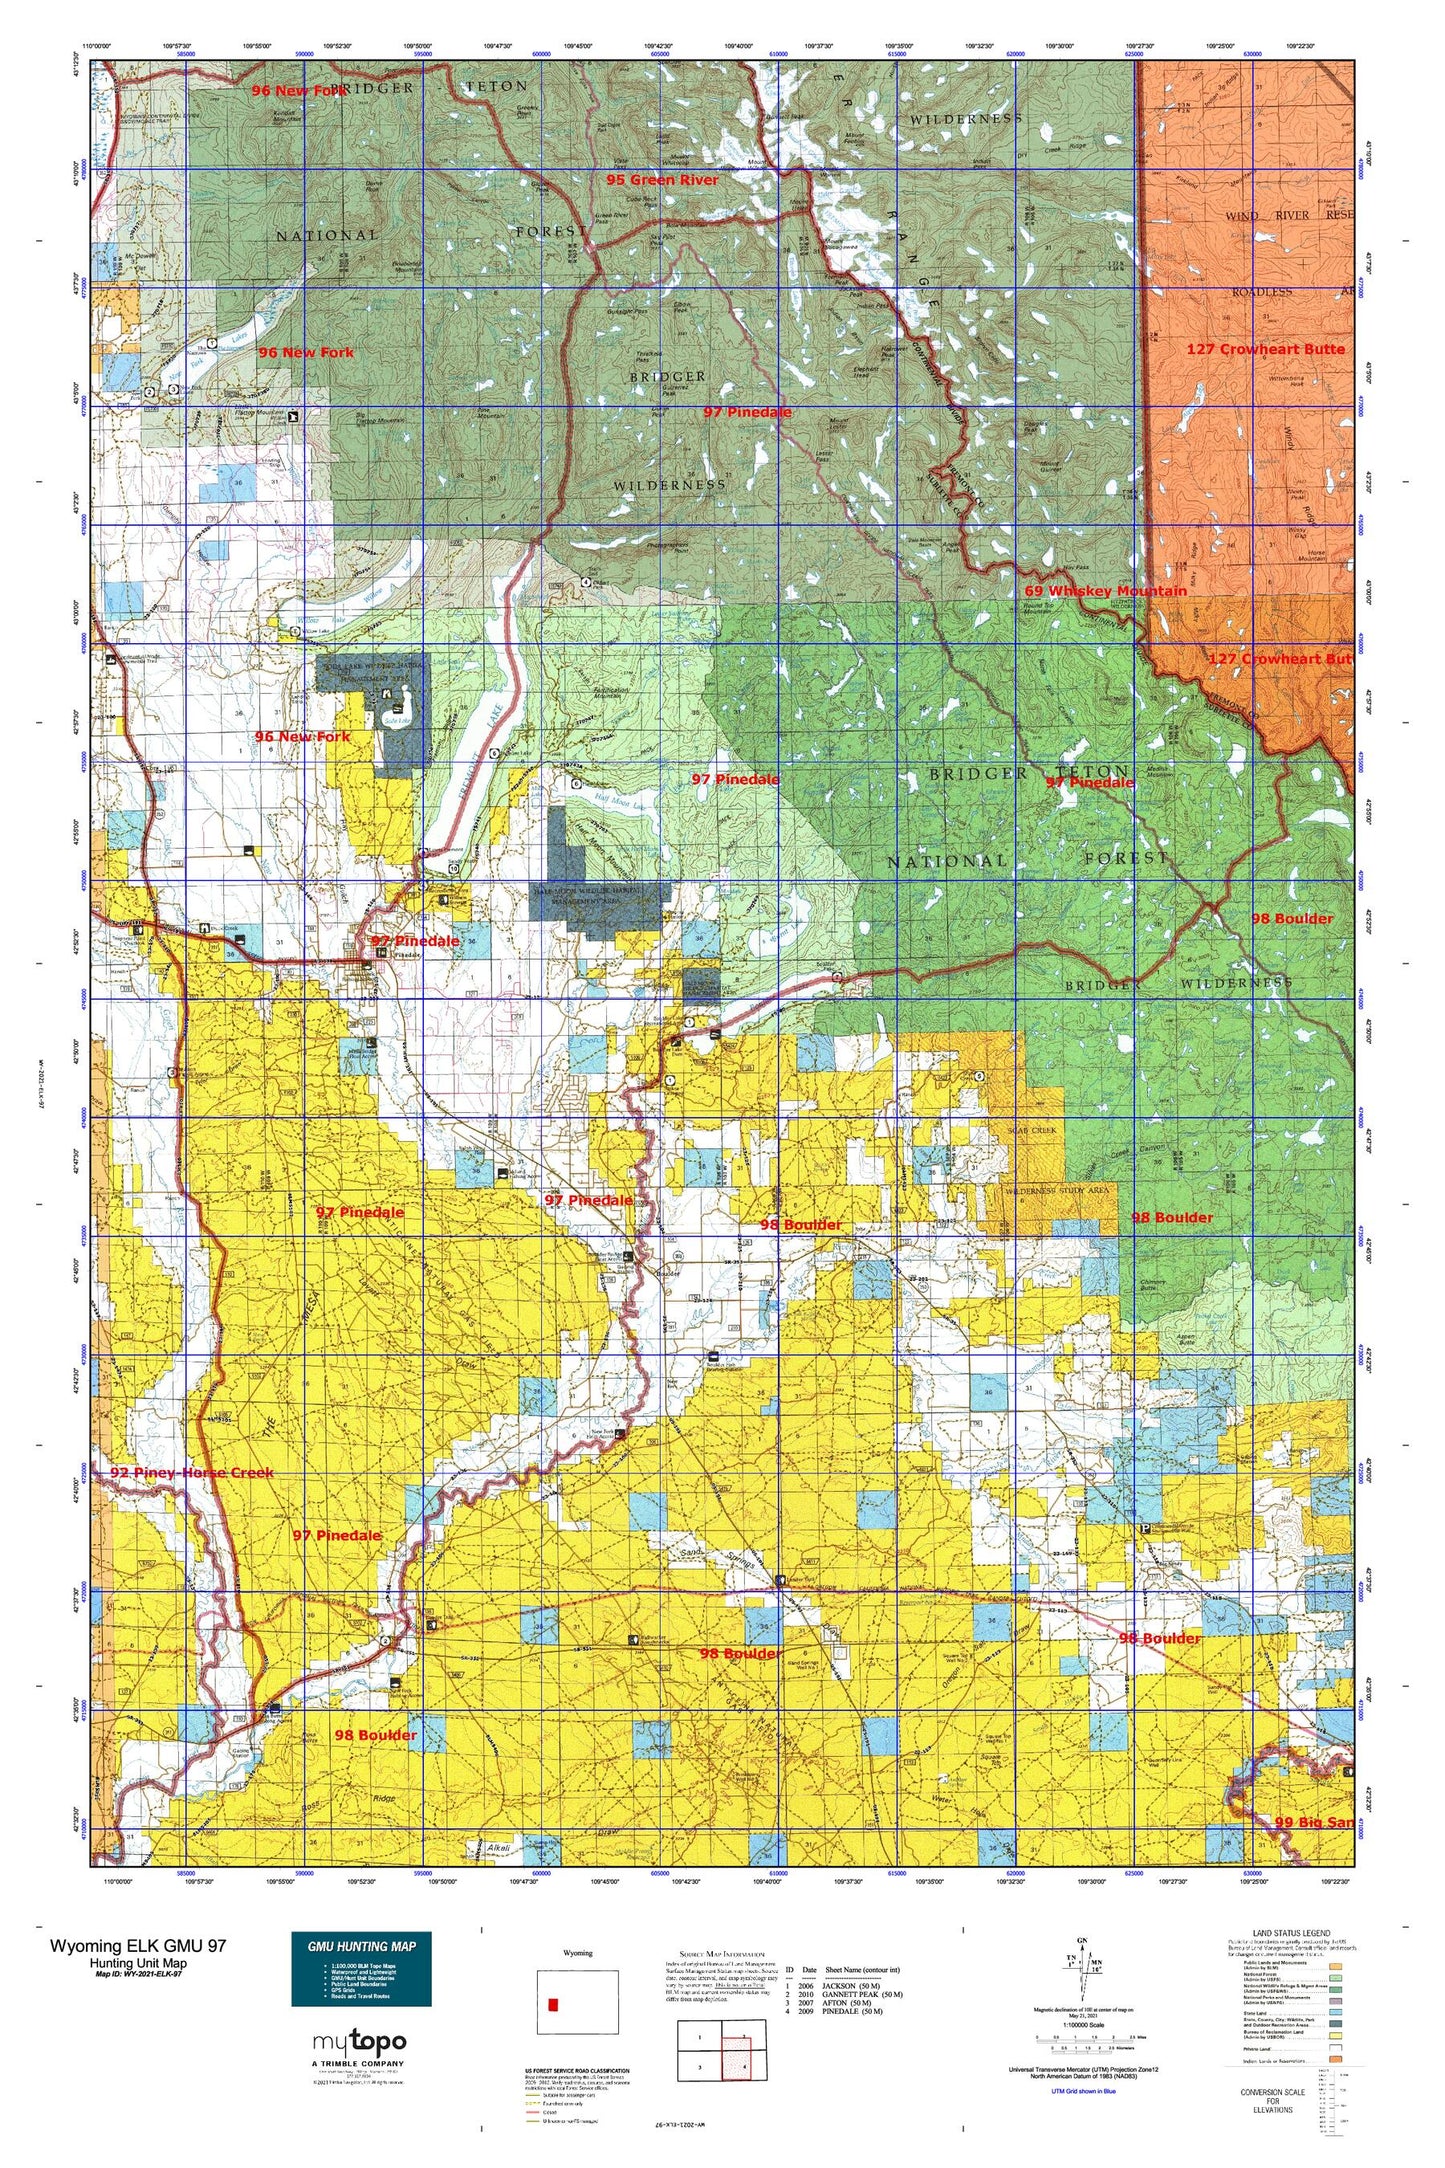 Wyoming Elk GMU 97 Map Image